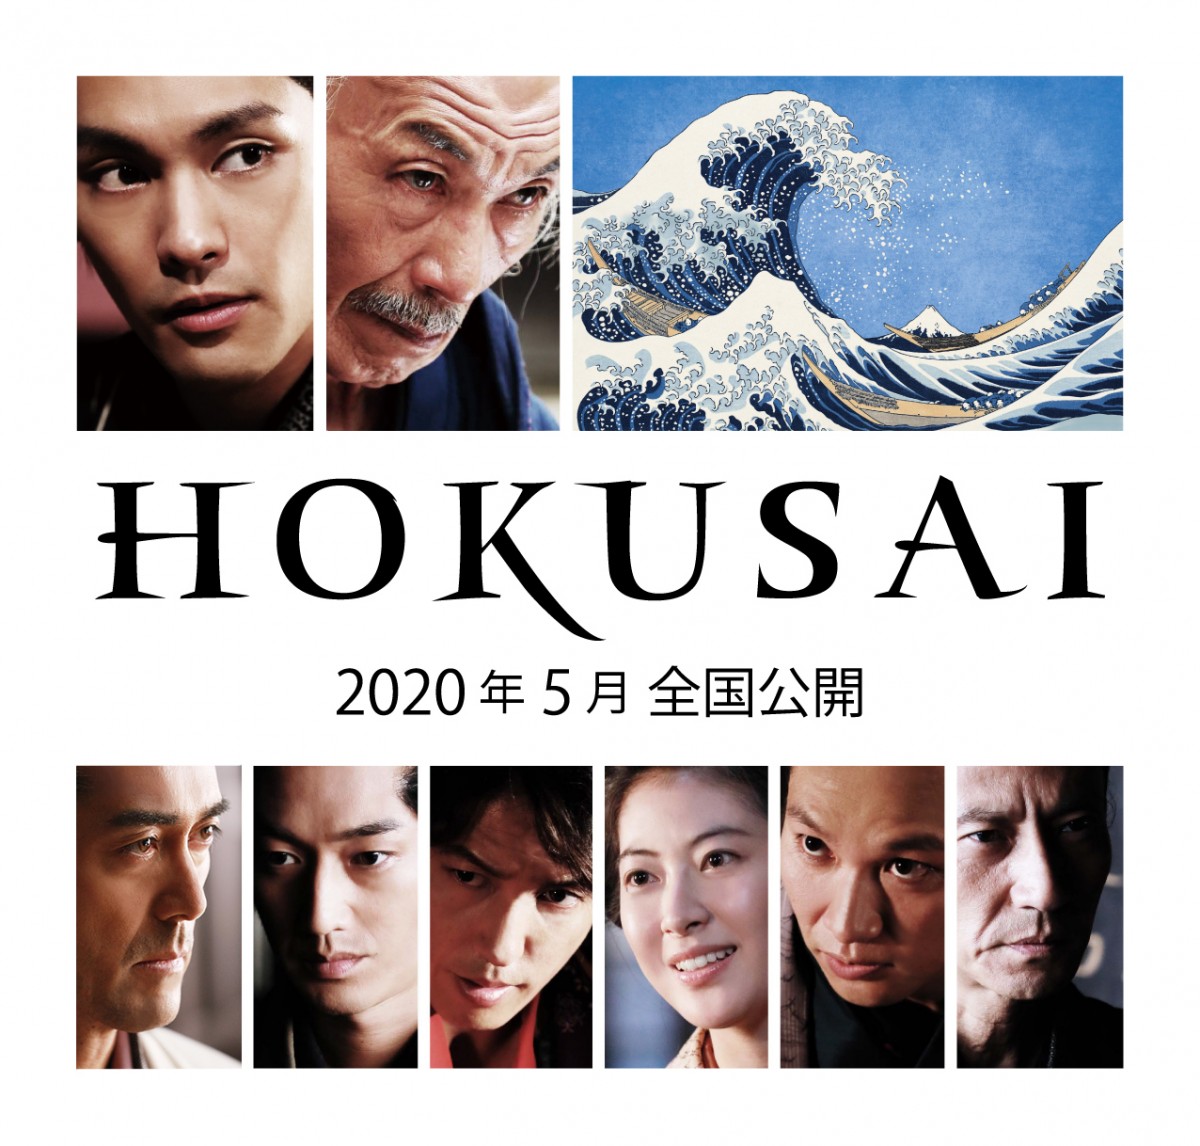 映画『HOKUSAI』追加キャストビジュアル